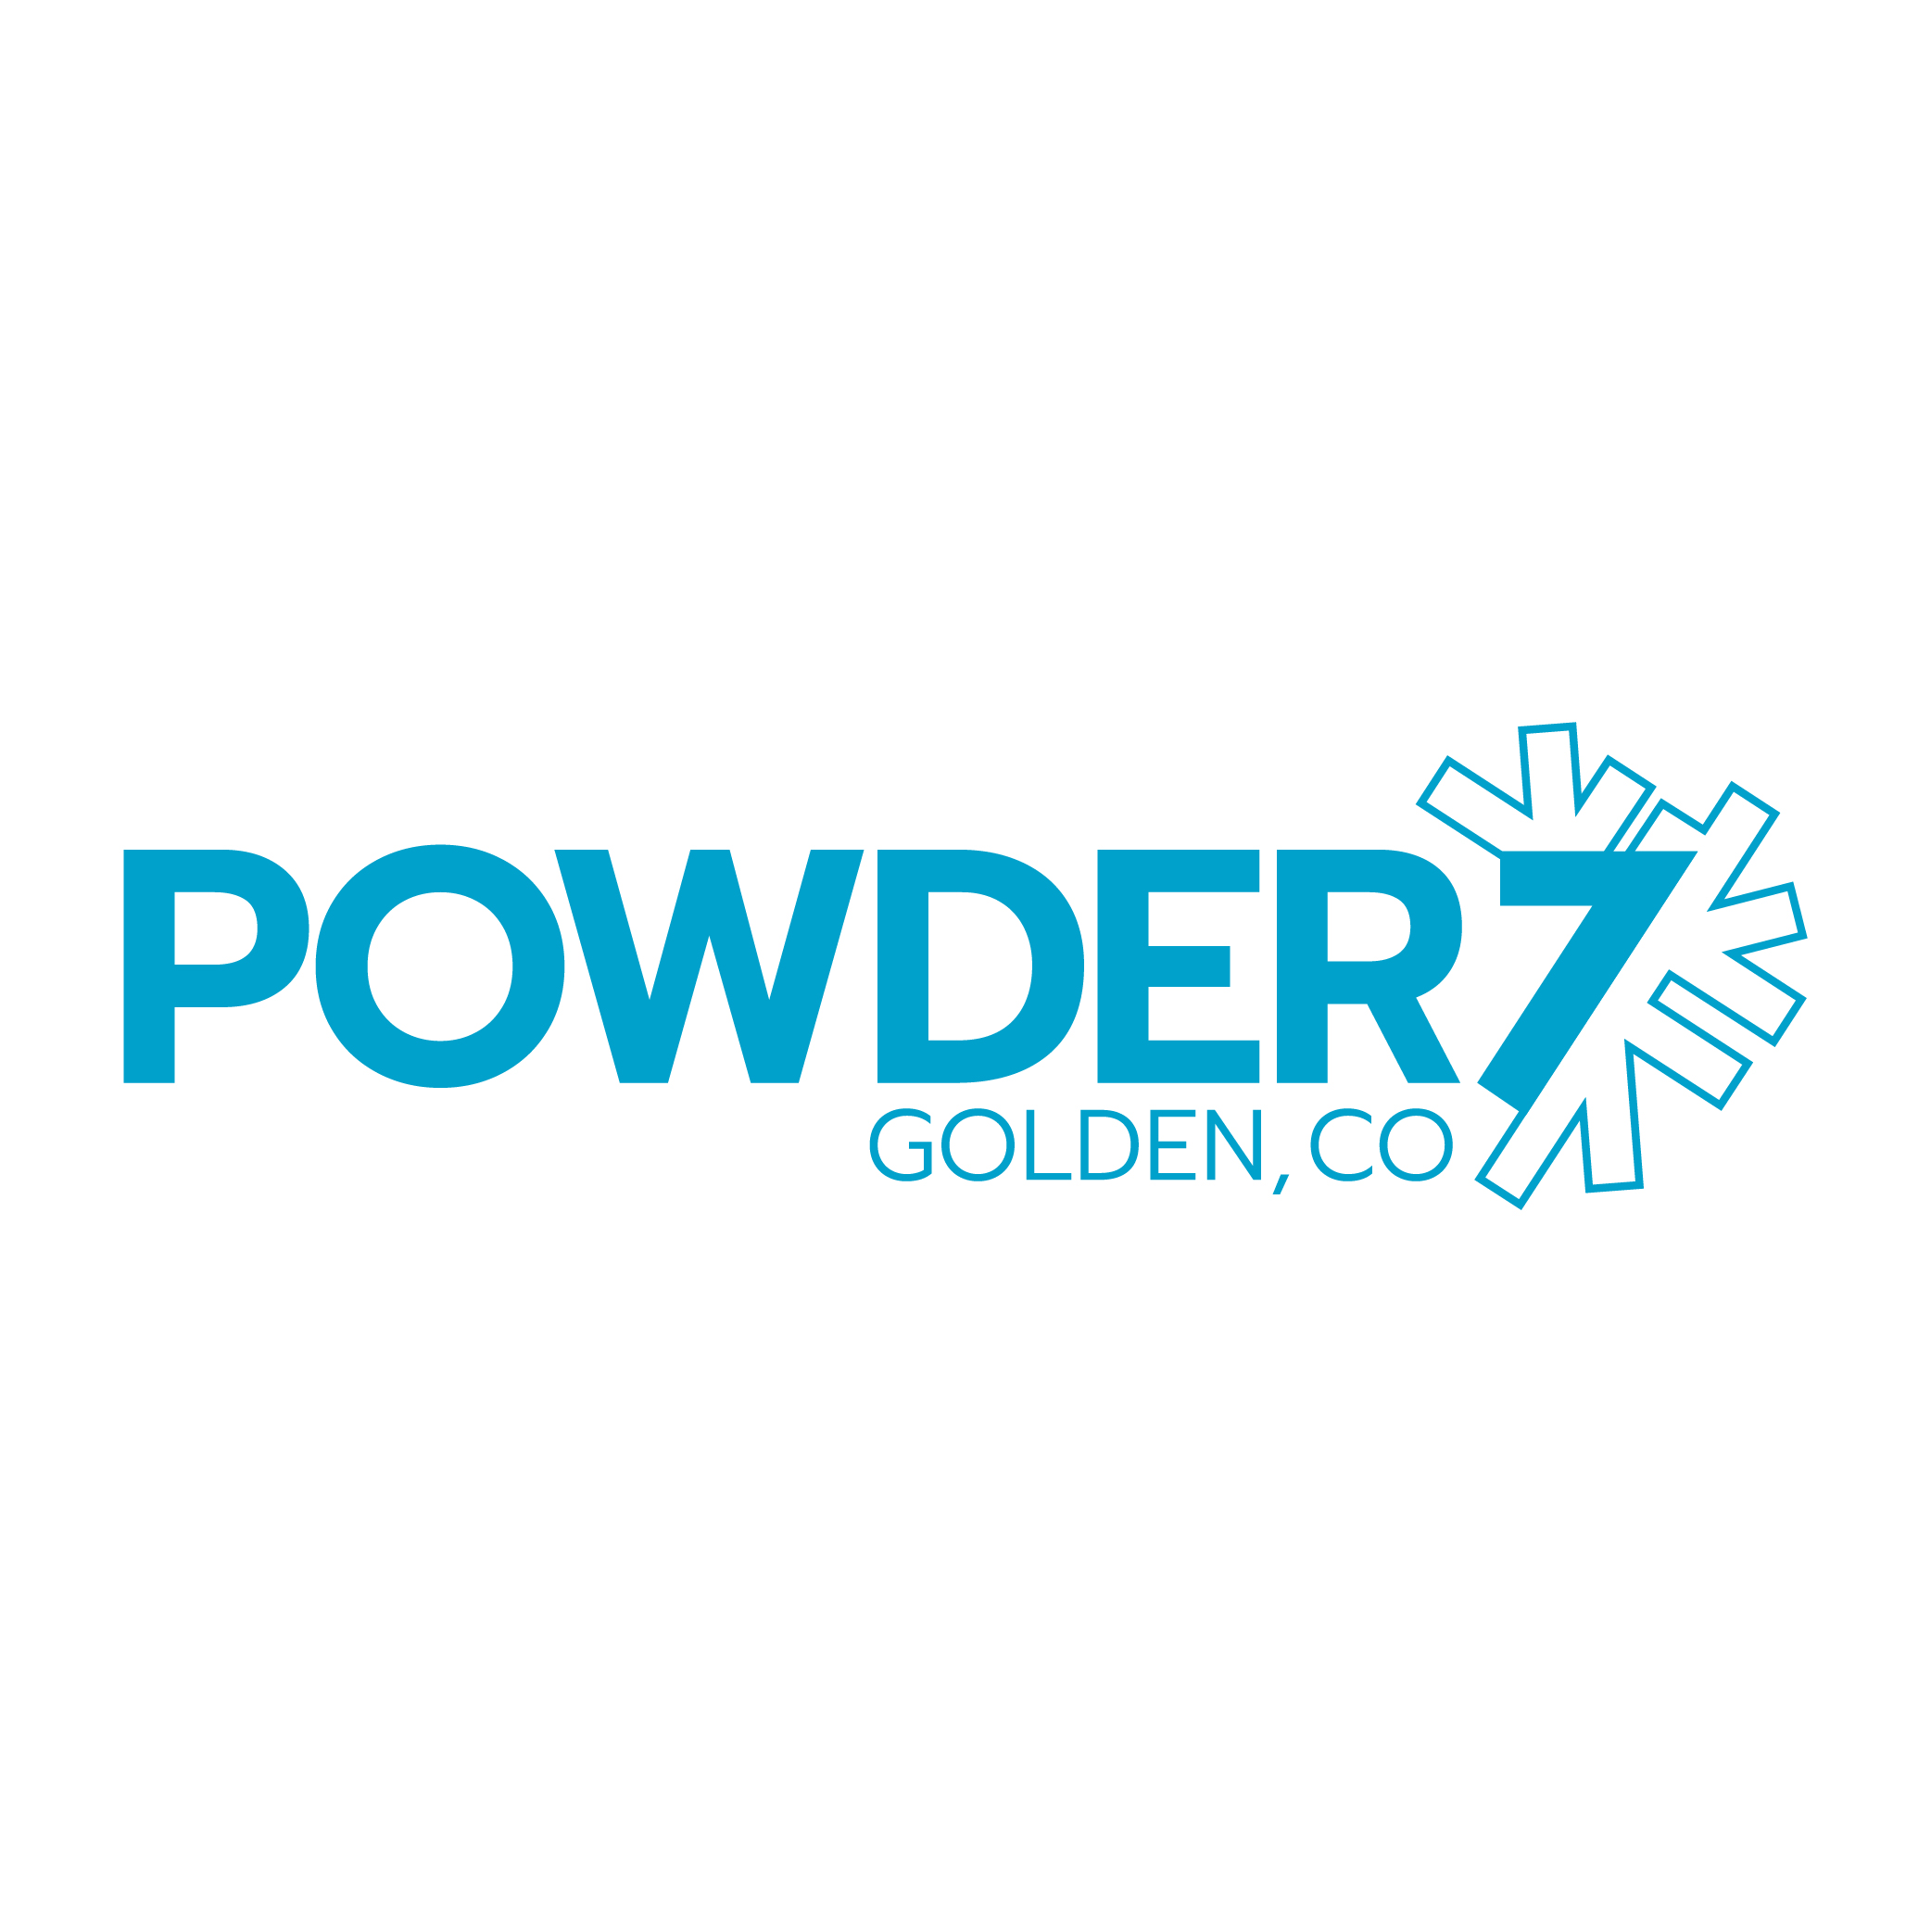 Powder7